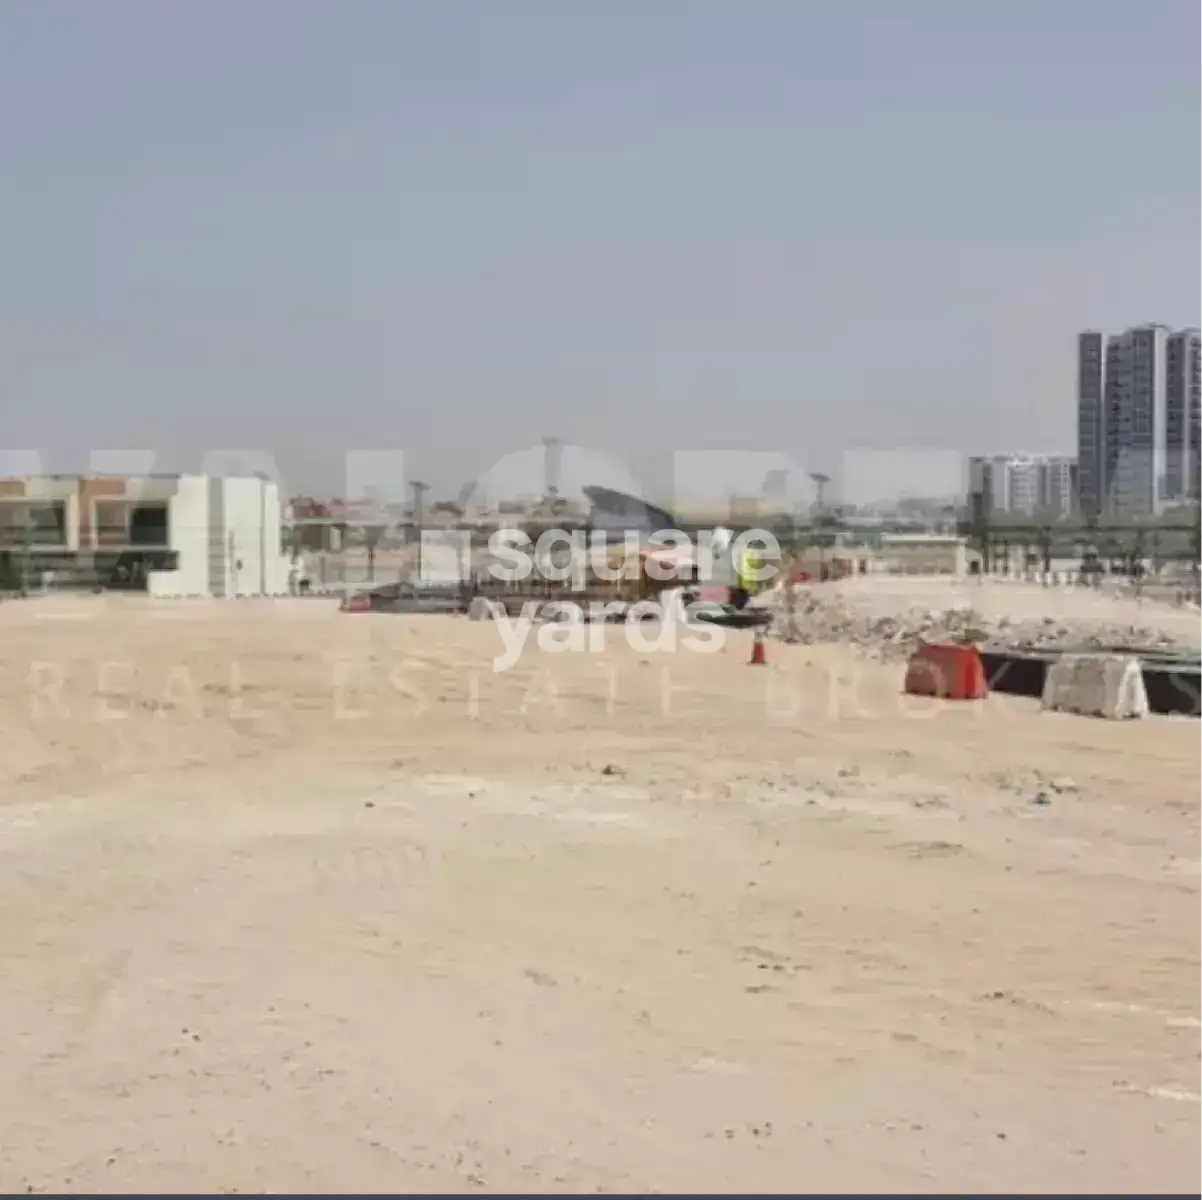 6458 Sq.Yd. Plot in Jebel Ali Industrial 1